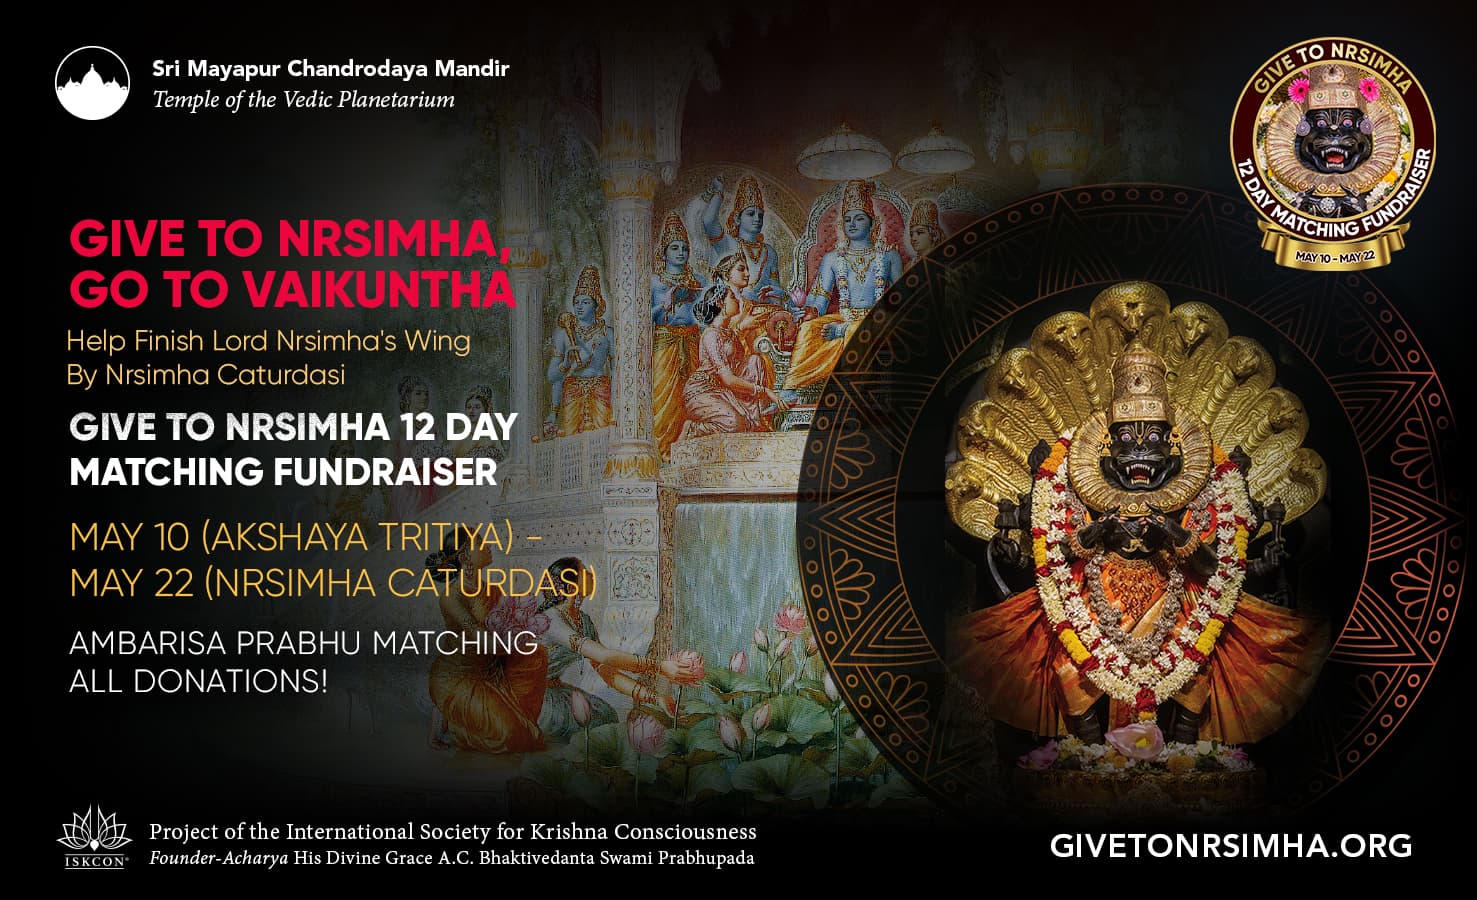 تبرع لـ Nrsimha، اذهب إلى Vaikuntha: حملة جمع التبرعات لمطابقة TOVP لمدة 12 يومًا، من 10 إلى 22 مايو